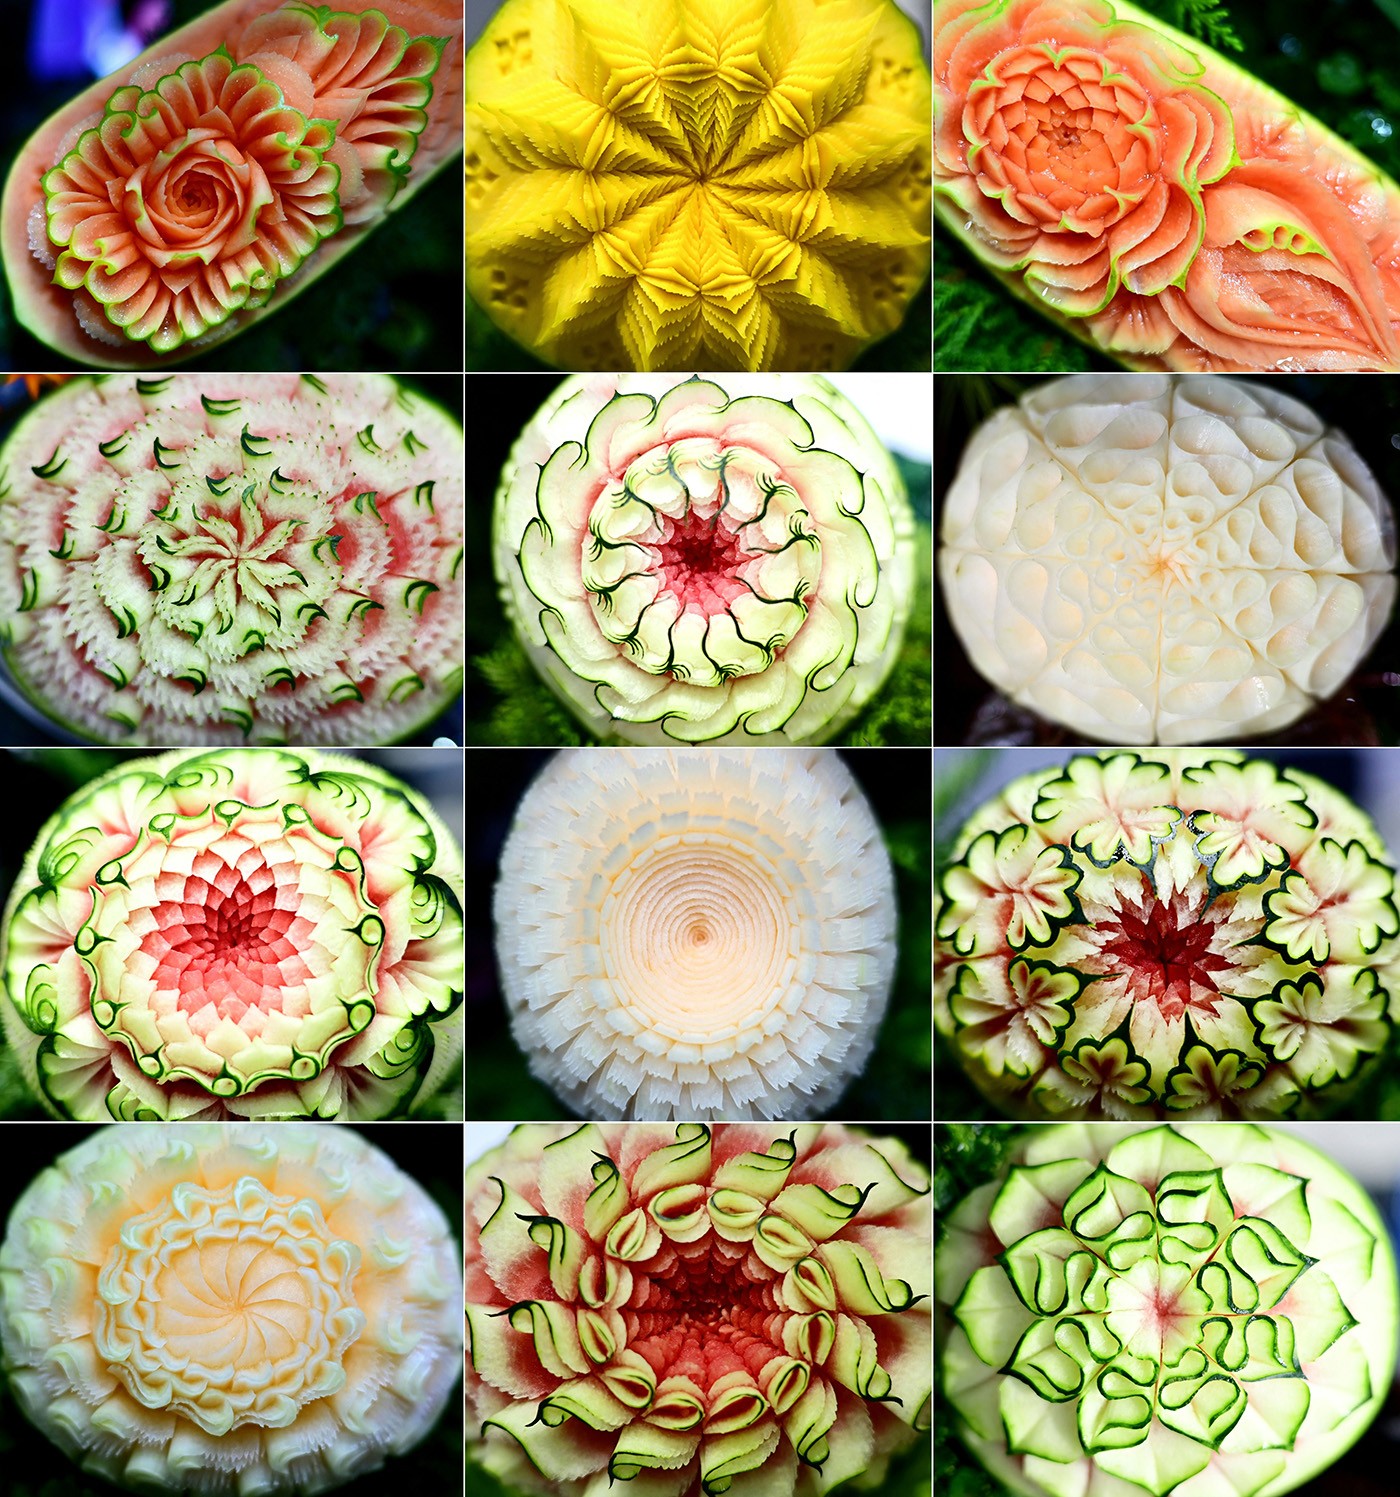 Escultura em frutas e vegetais chamam atenção em competição na Tailândia